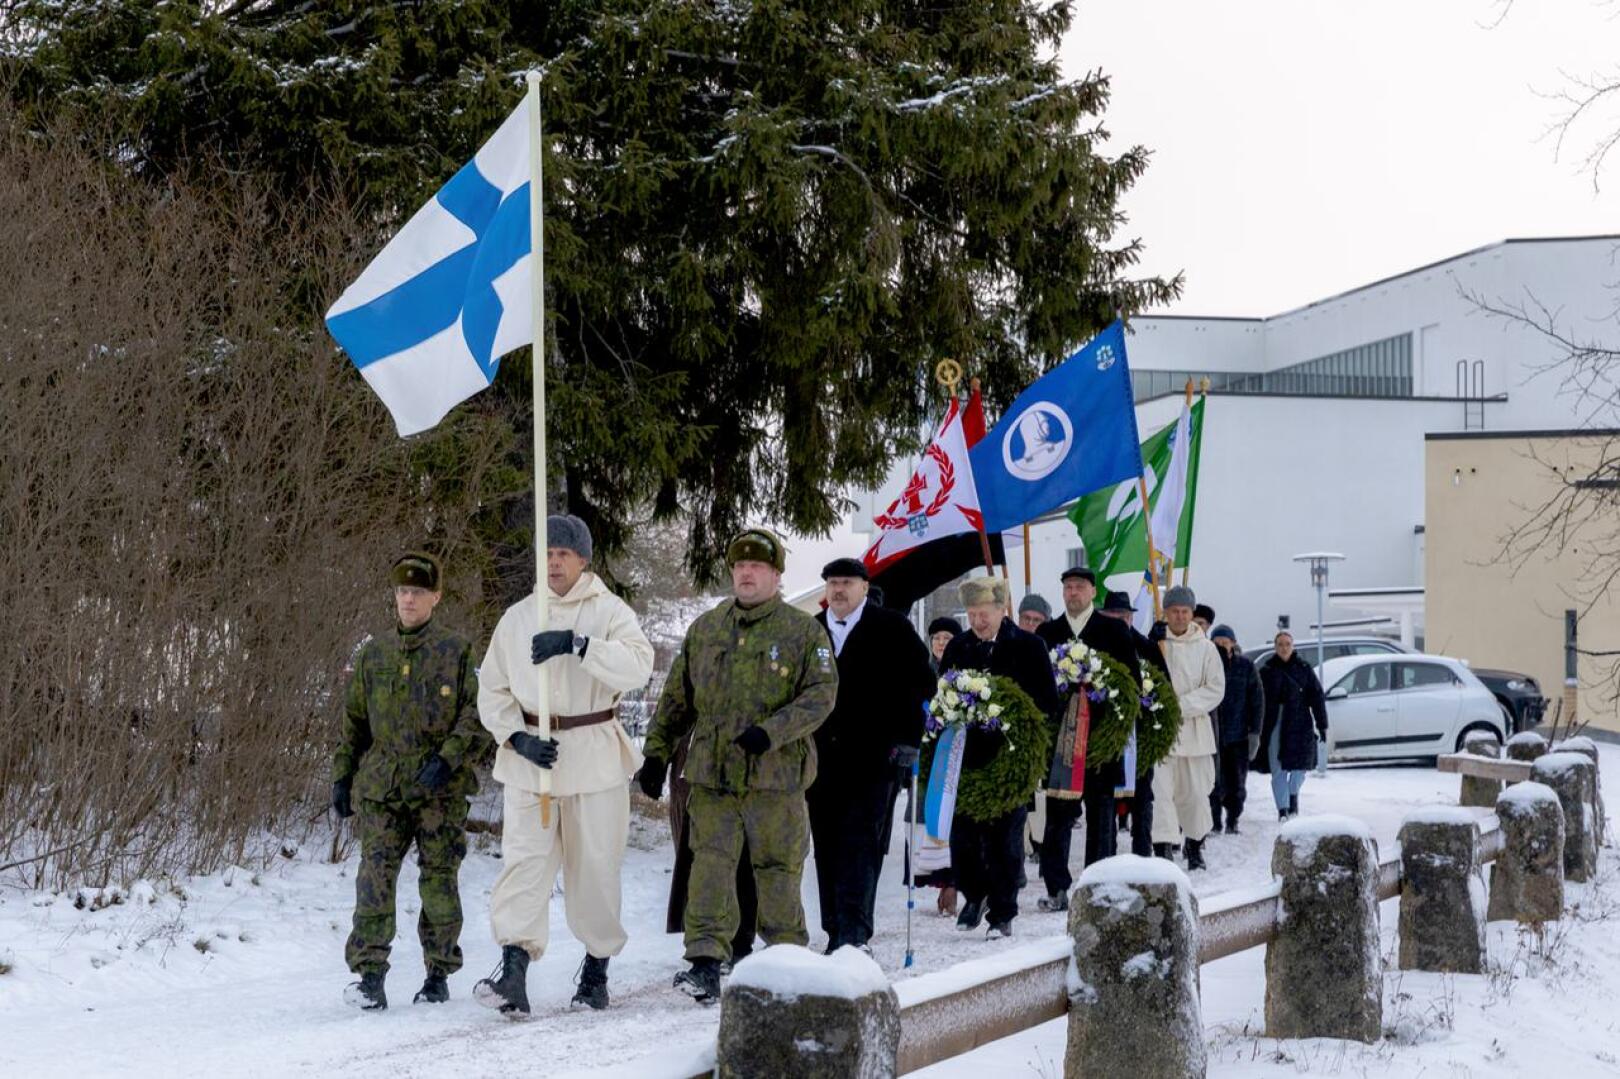 Lippulinna johdatti kirkkokansan seppelien laskuun sankarihaudalle, jossa puheen piti kaupunginvaltuutettu Helinä Niemelä.